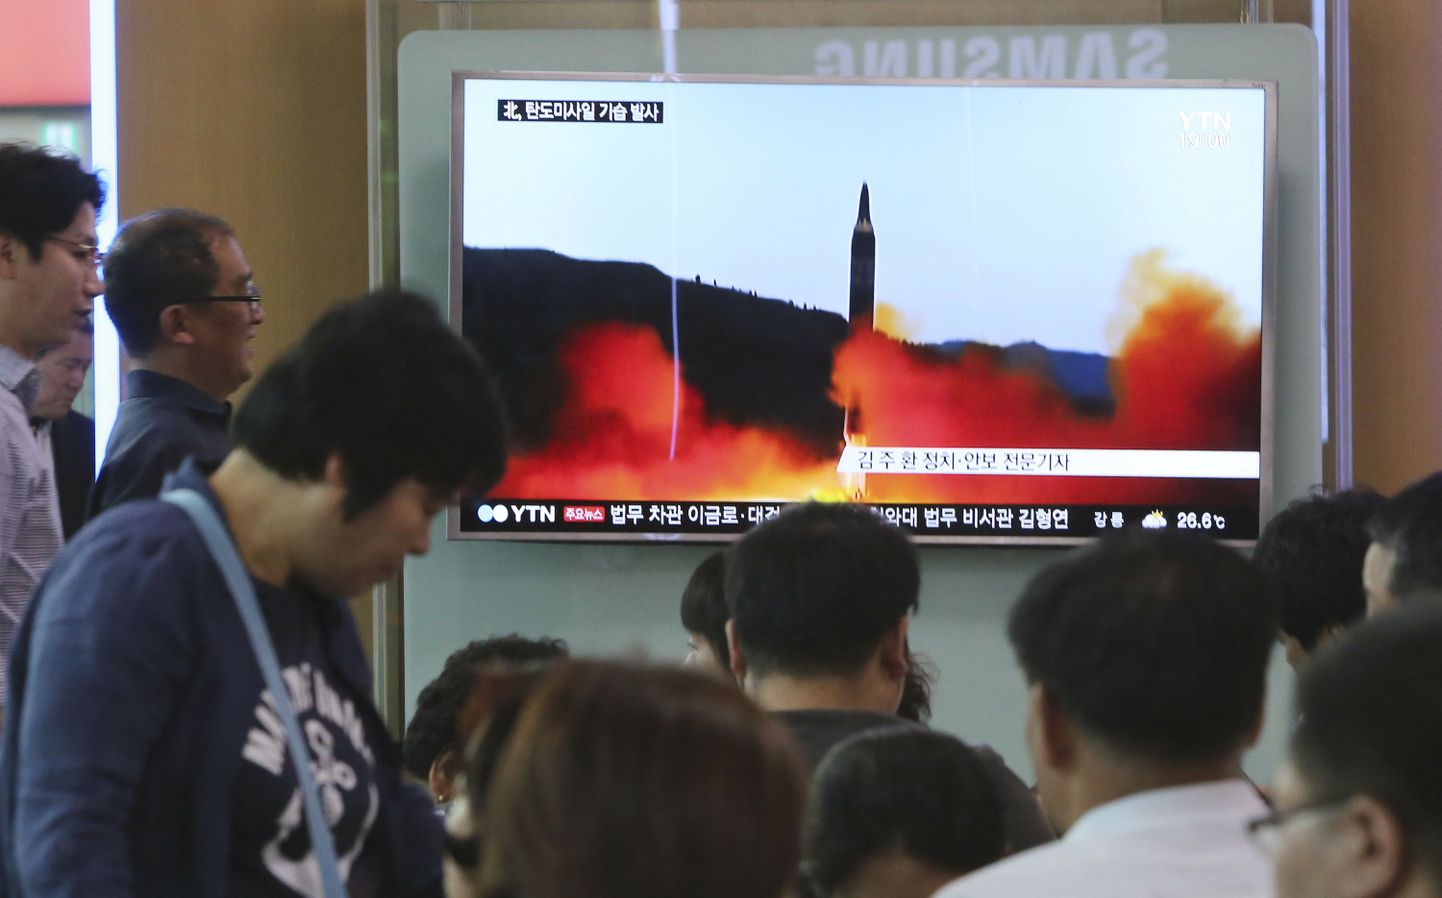 Lõunakorealased vaatavad teleuudiseid, kus teatati Põhja-Korea uuest raketikatsetusest.